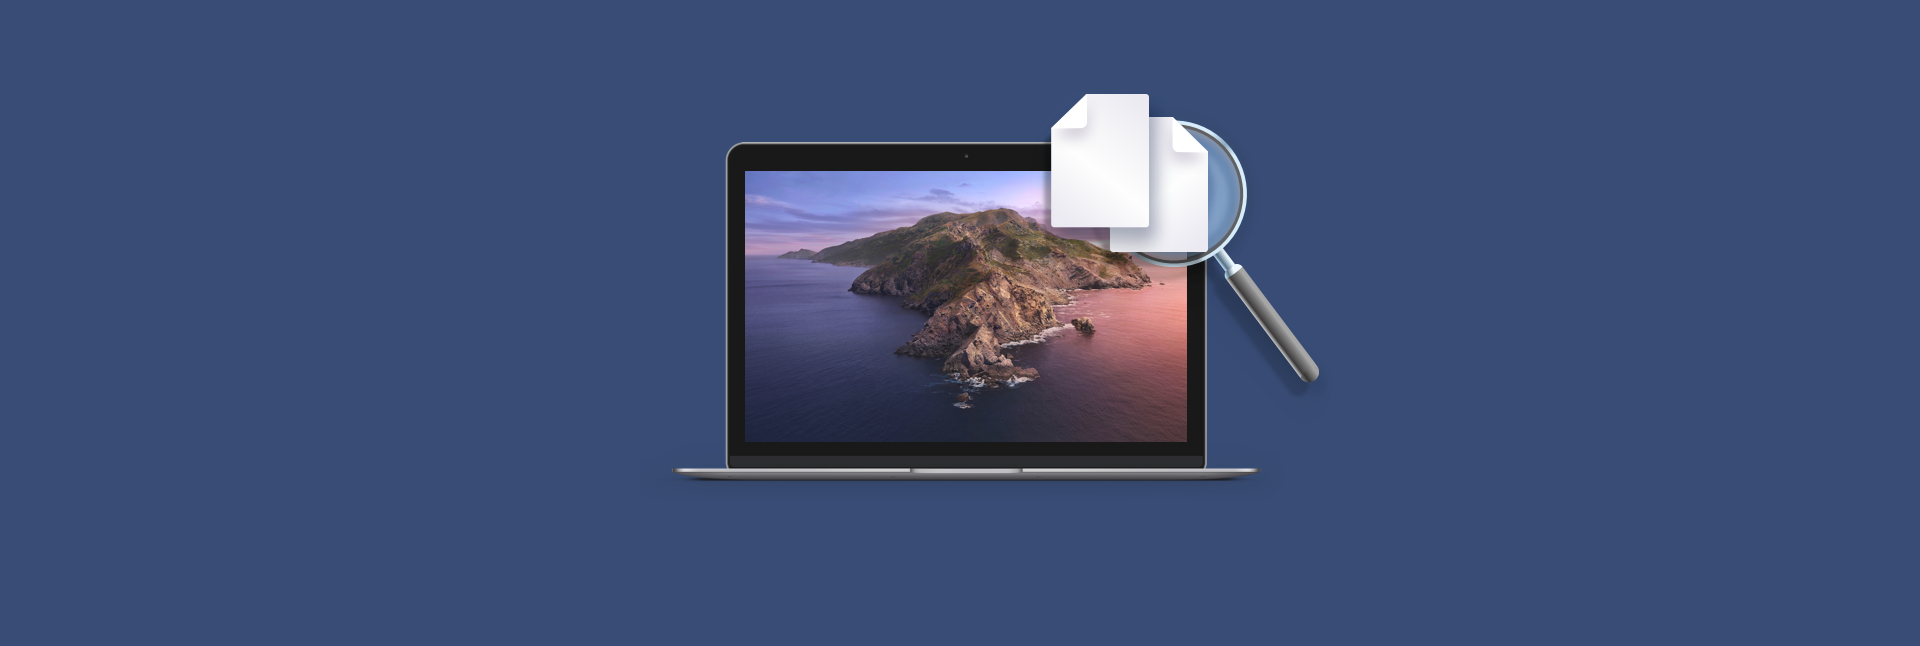 Duplicate Image Detector For Mac